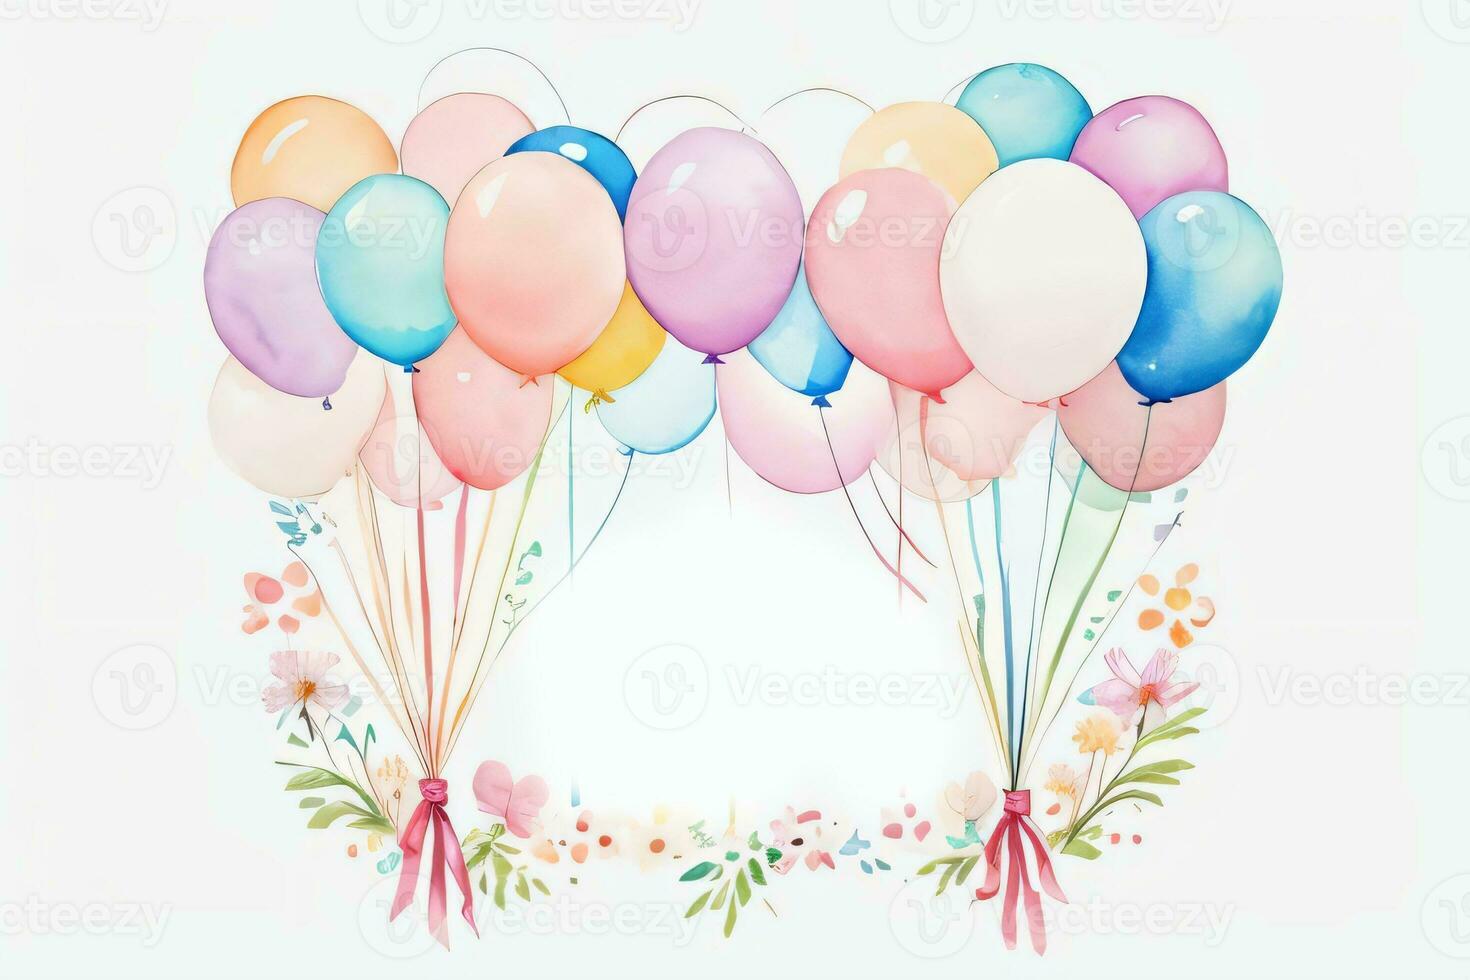 aguarela Casamento ou aniversário saudações cartão fundo com balões e flores foto